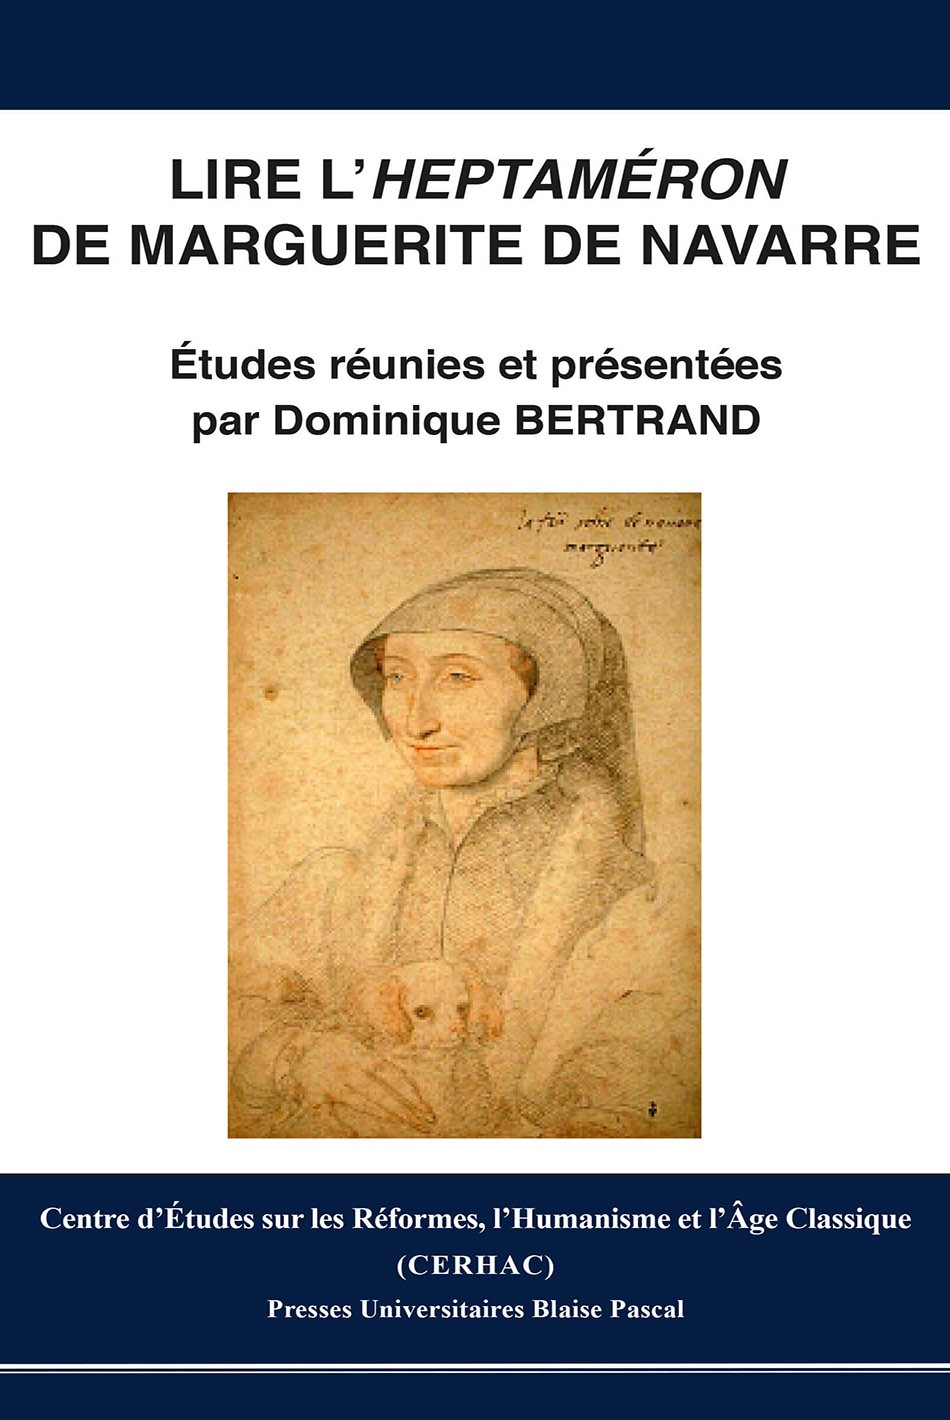 Lire l'Heptaméron de Marguerite de Navarre